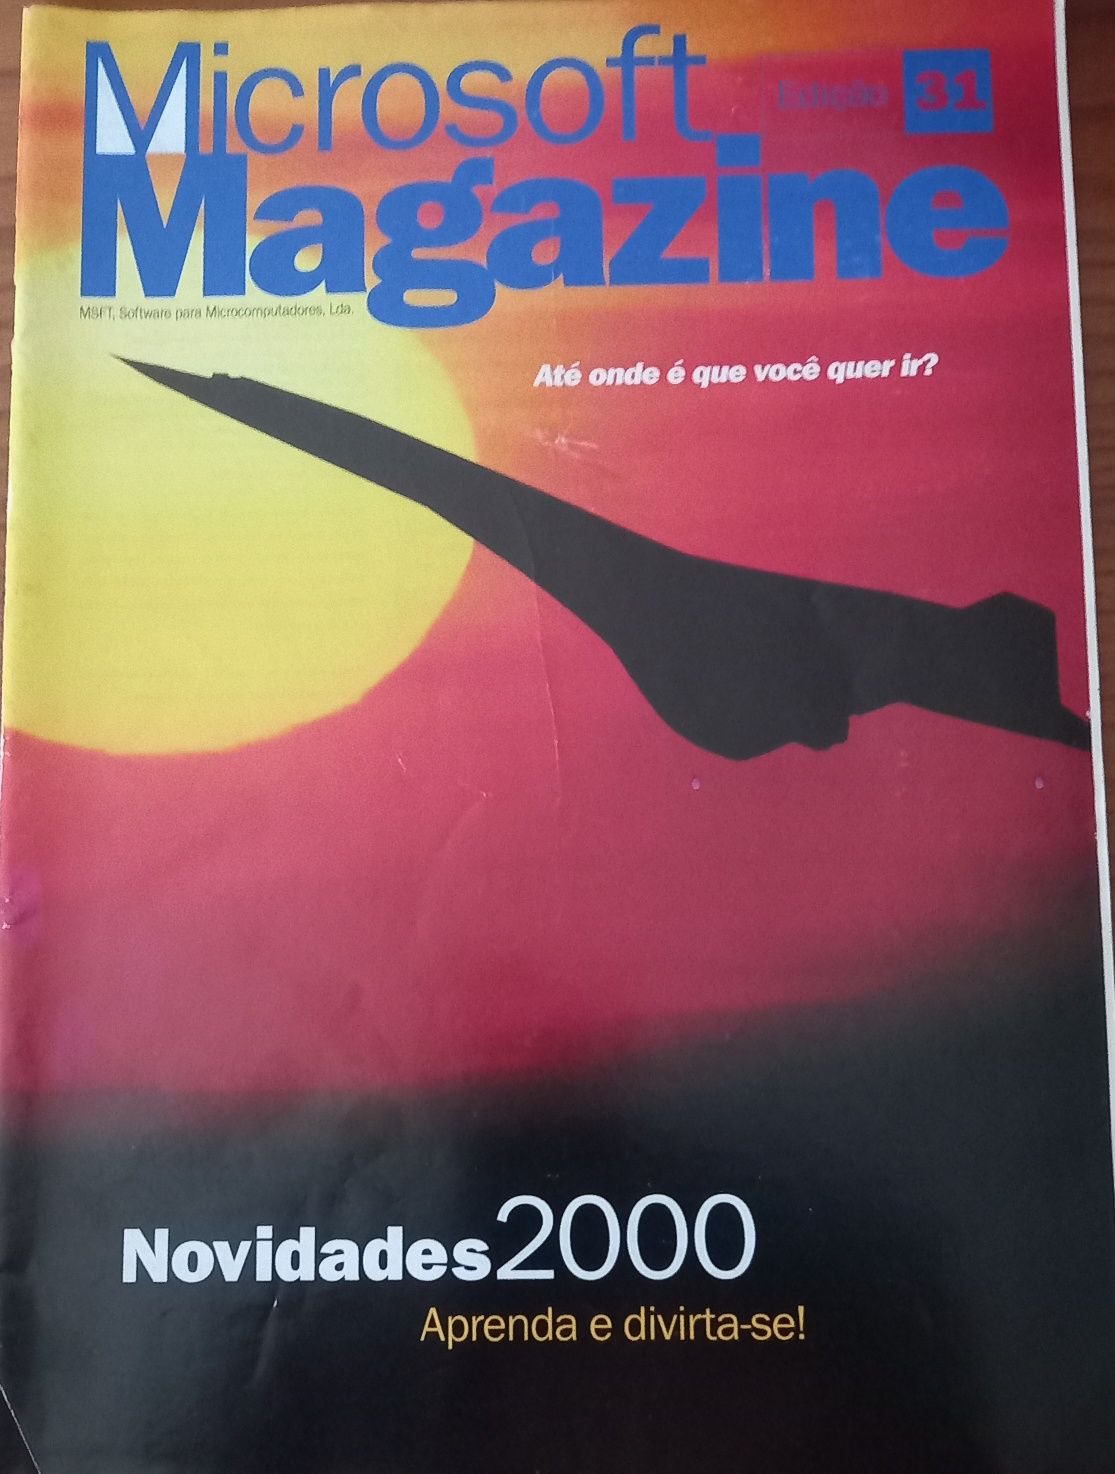 Microsoft magazine n°31 novidades Flight simulator 2000 e outras